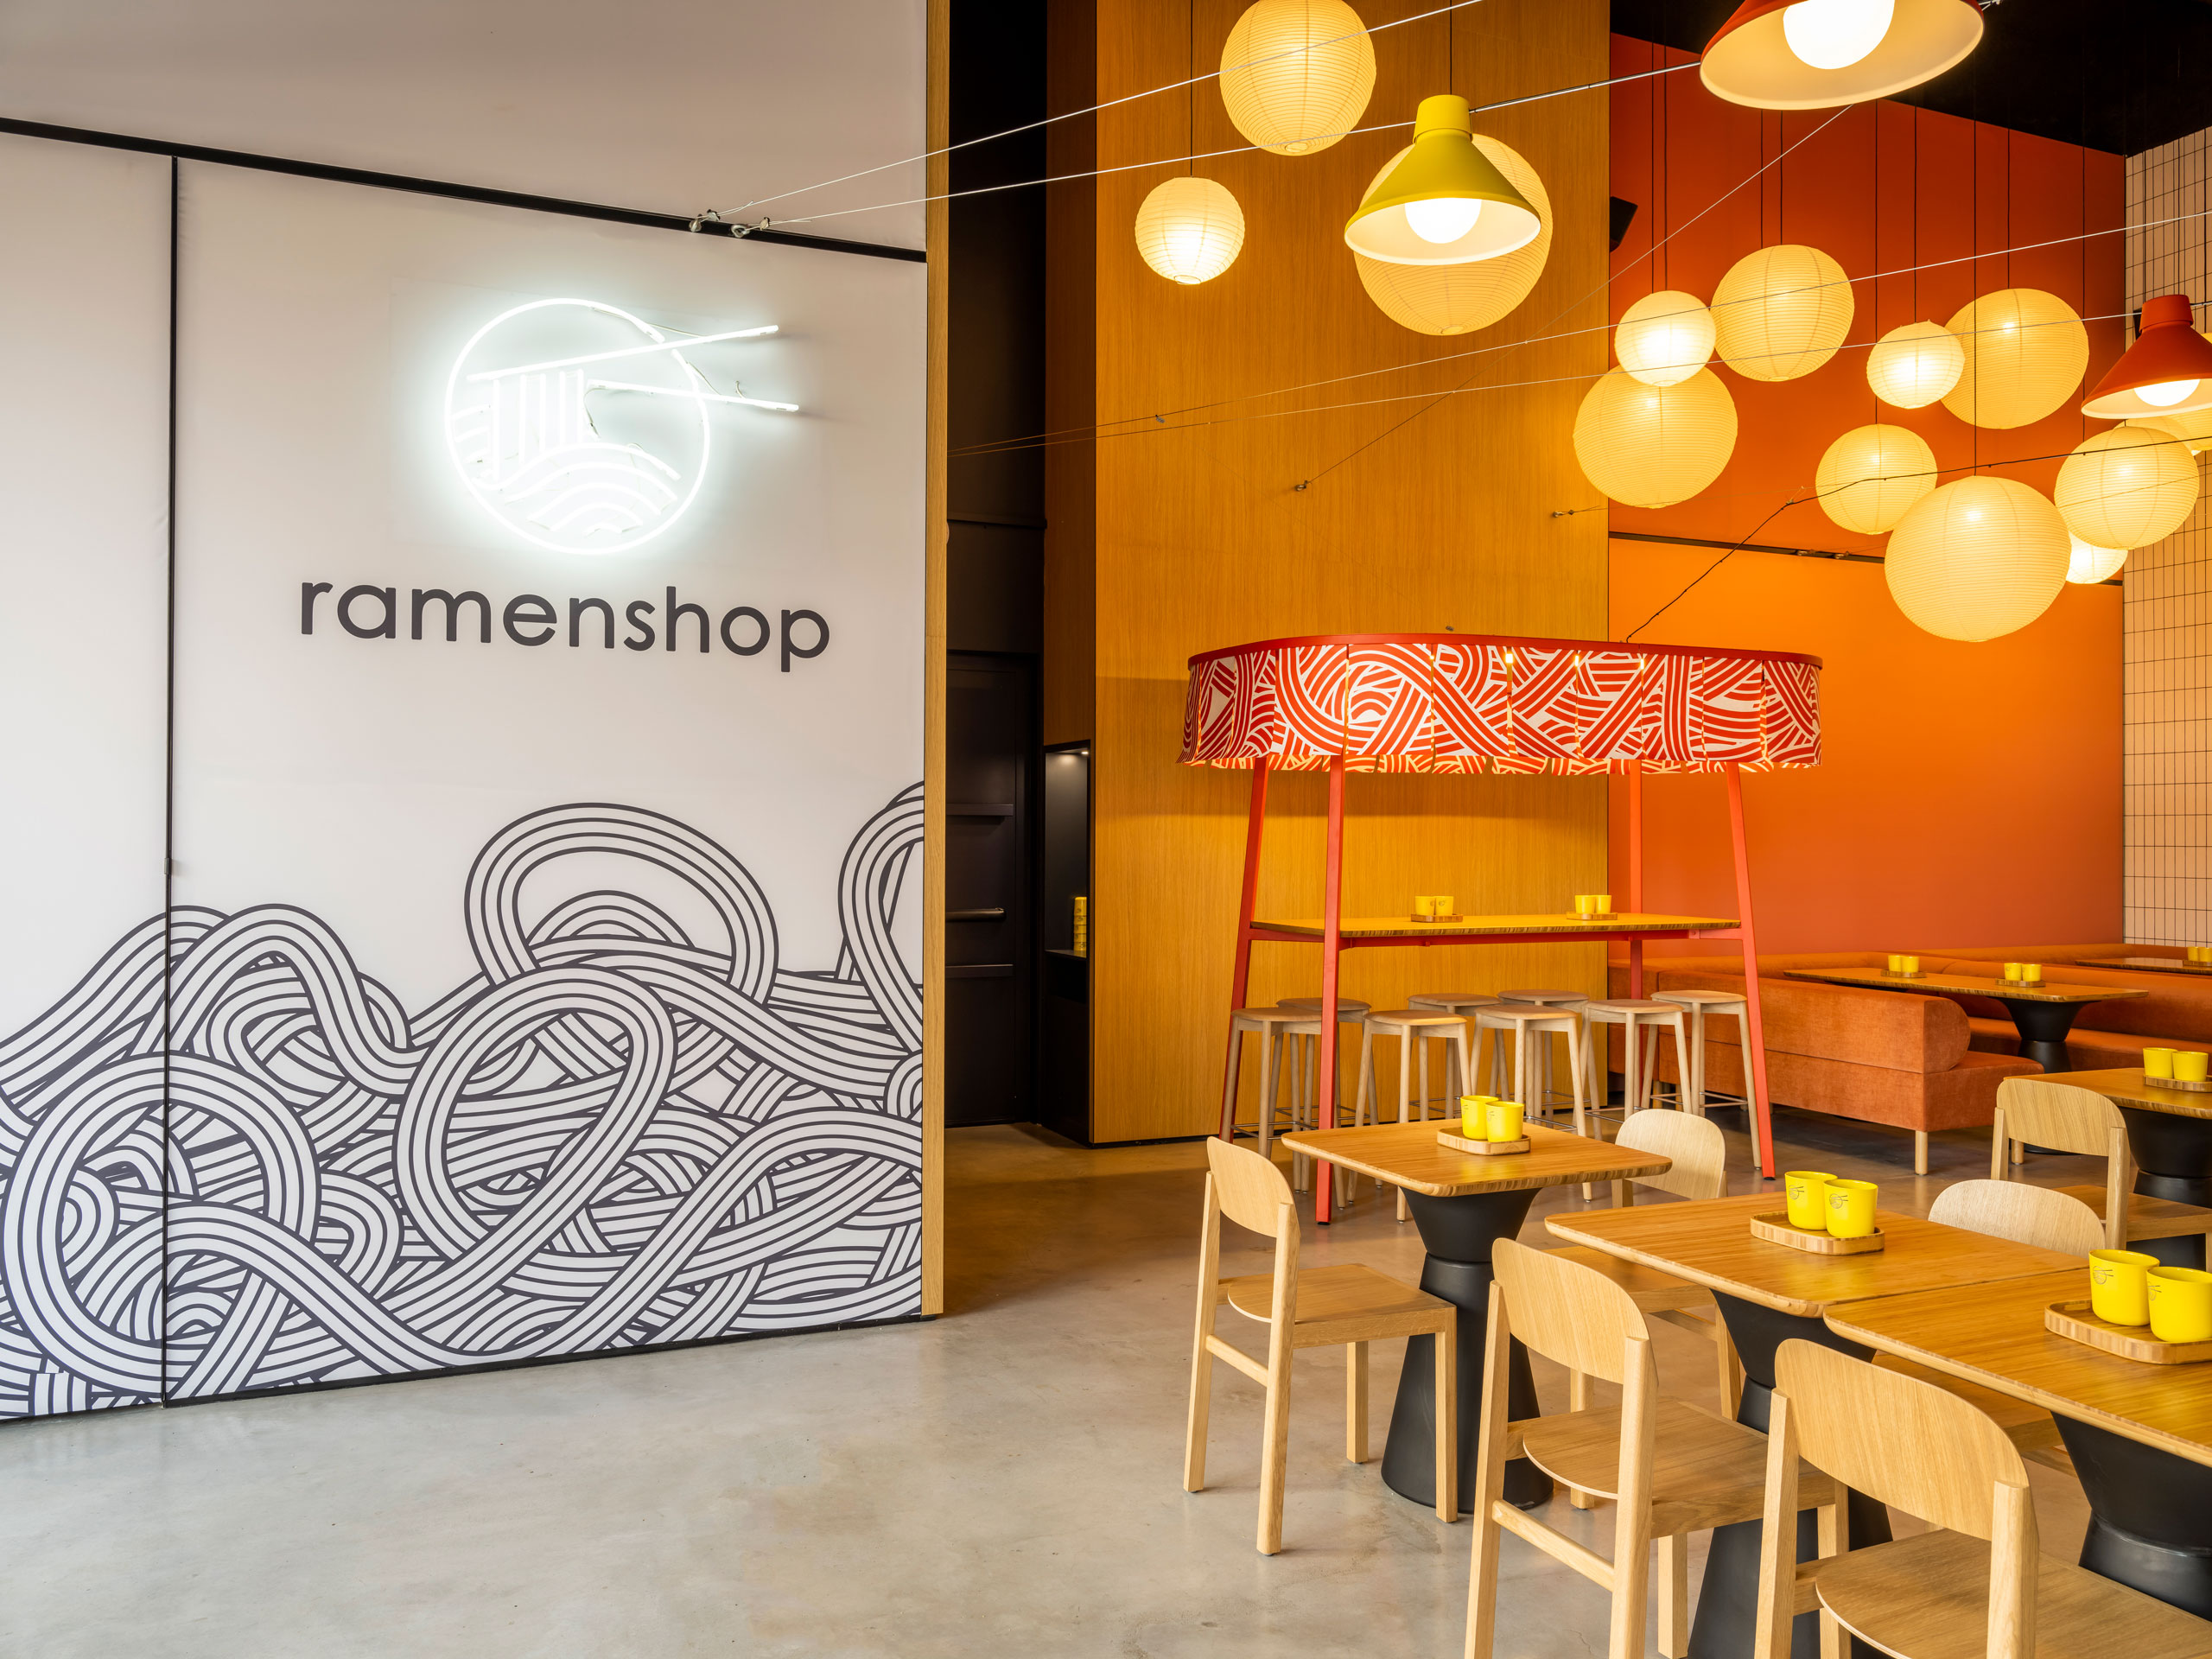 décoration ramen shop